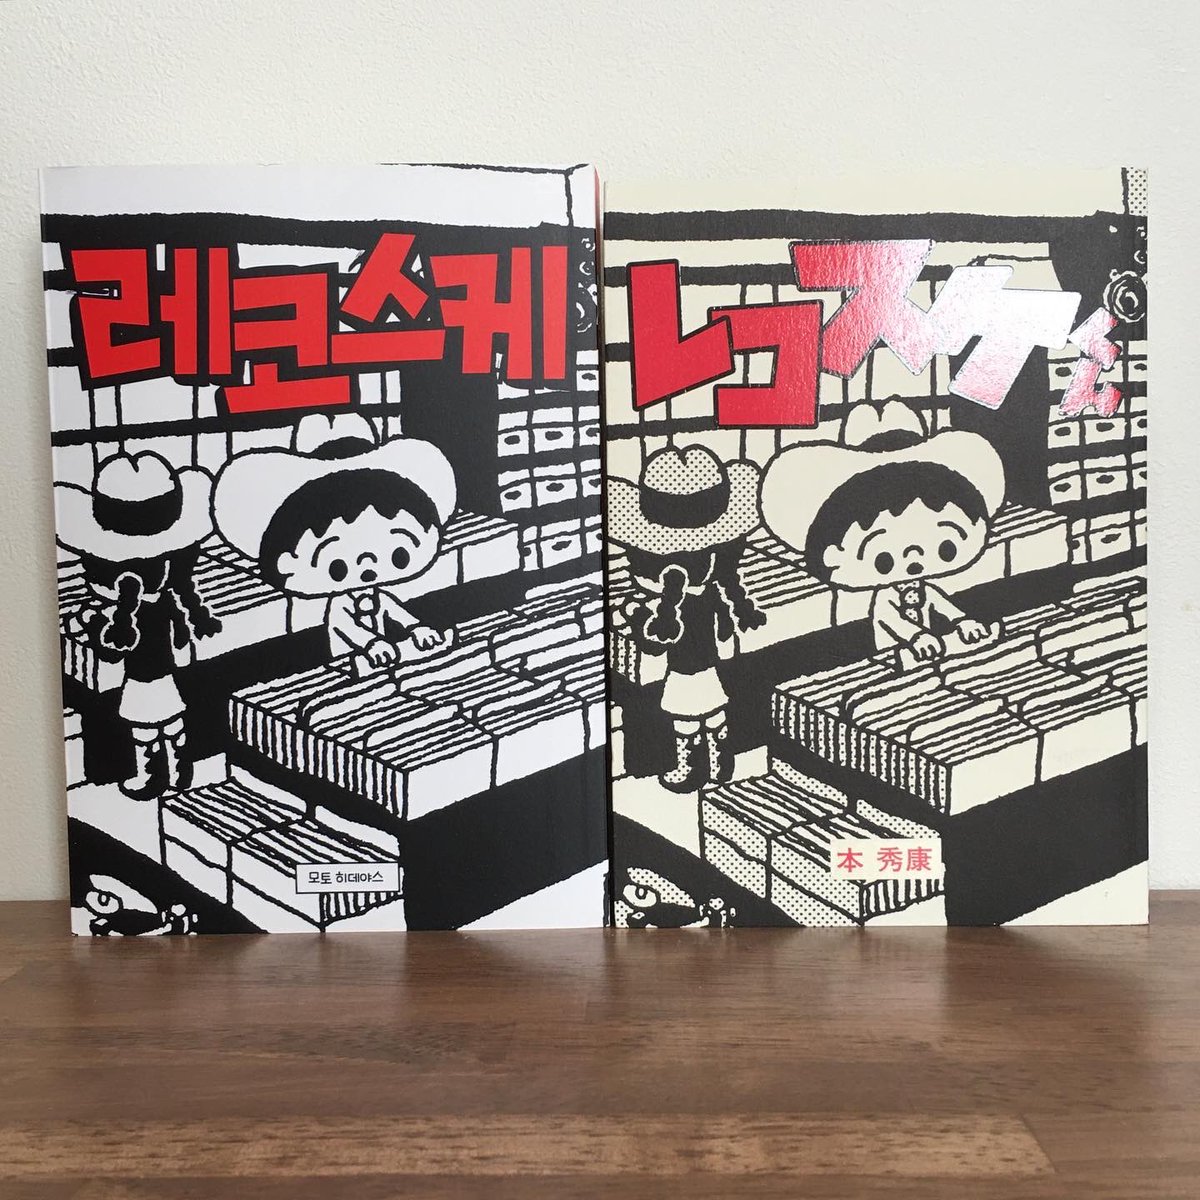 「レコスケくん」の韓国版が出ました!韓国の音楽好き、レコード好きの皆さん、読んでみてください!
#레코스케 